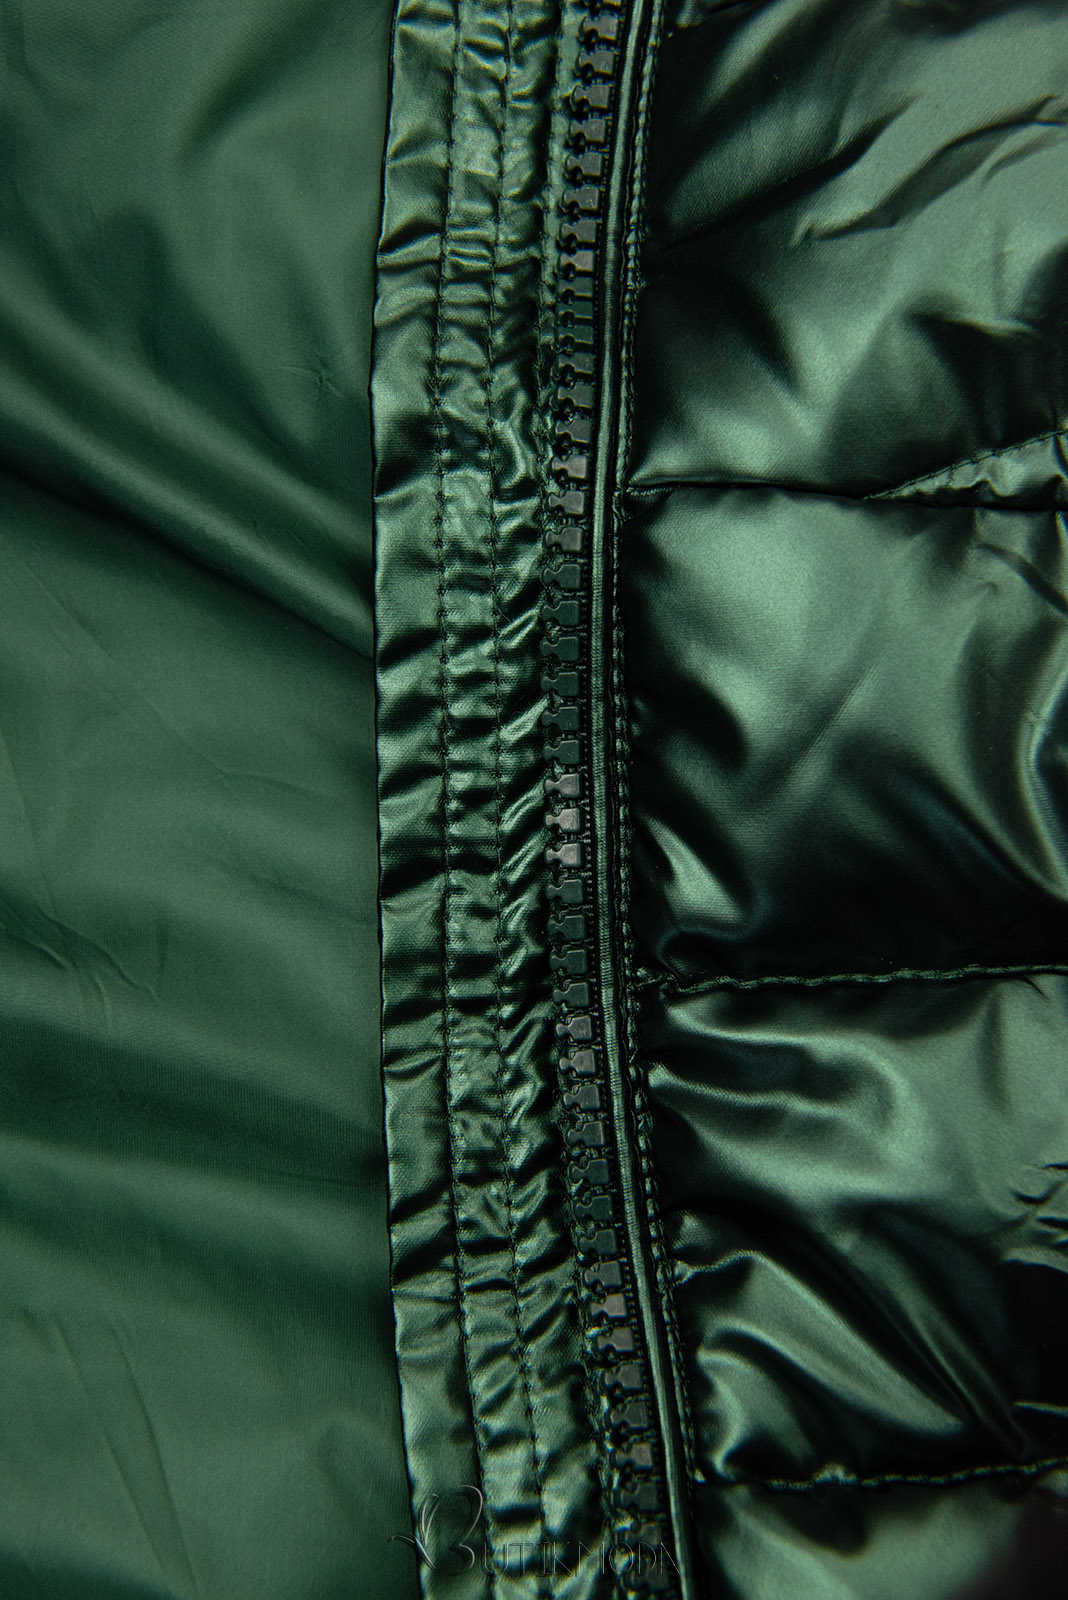 Smaragdzöld színű fényes téli kabát levehető műszőrmével